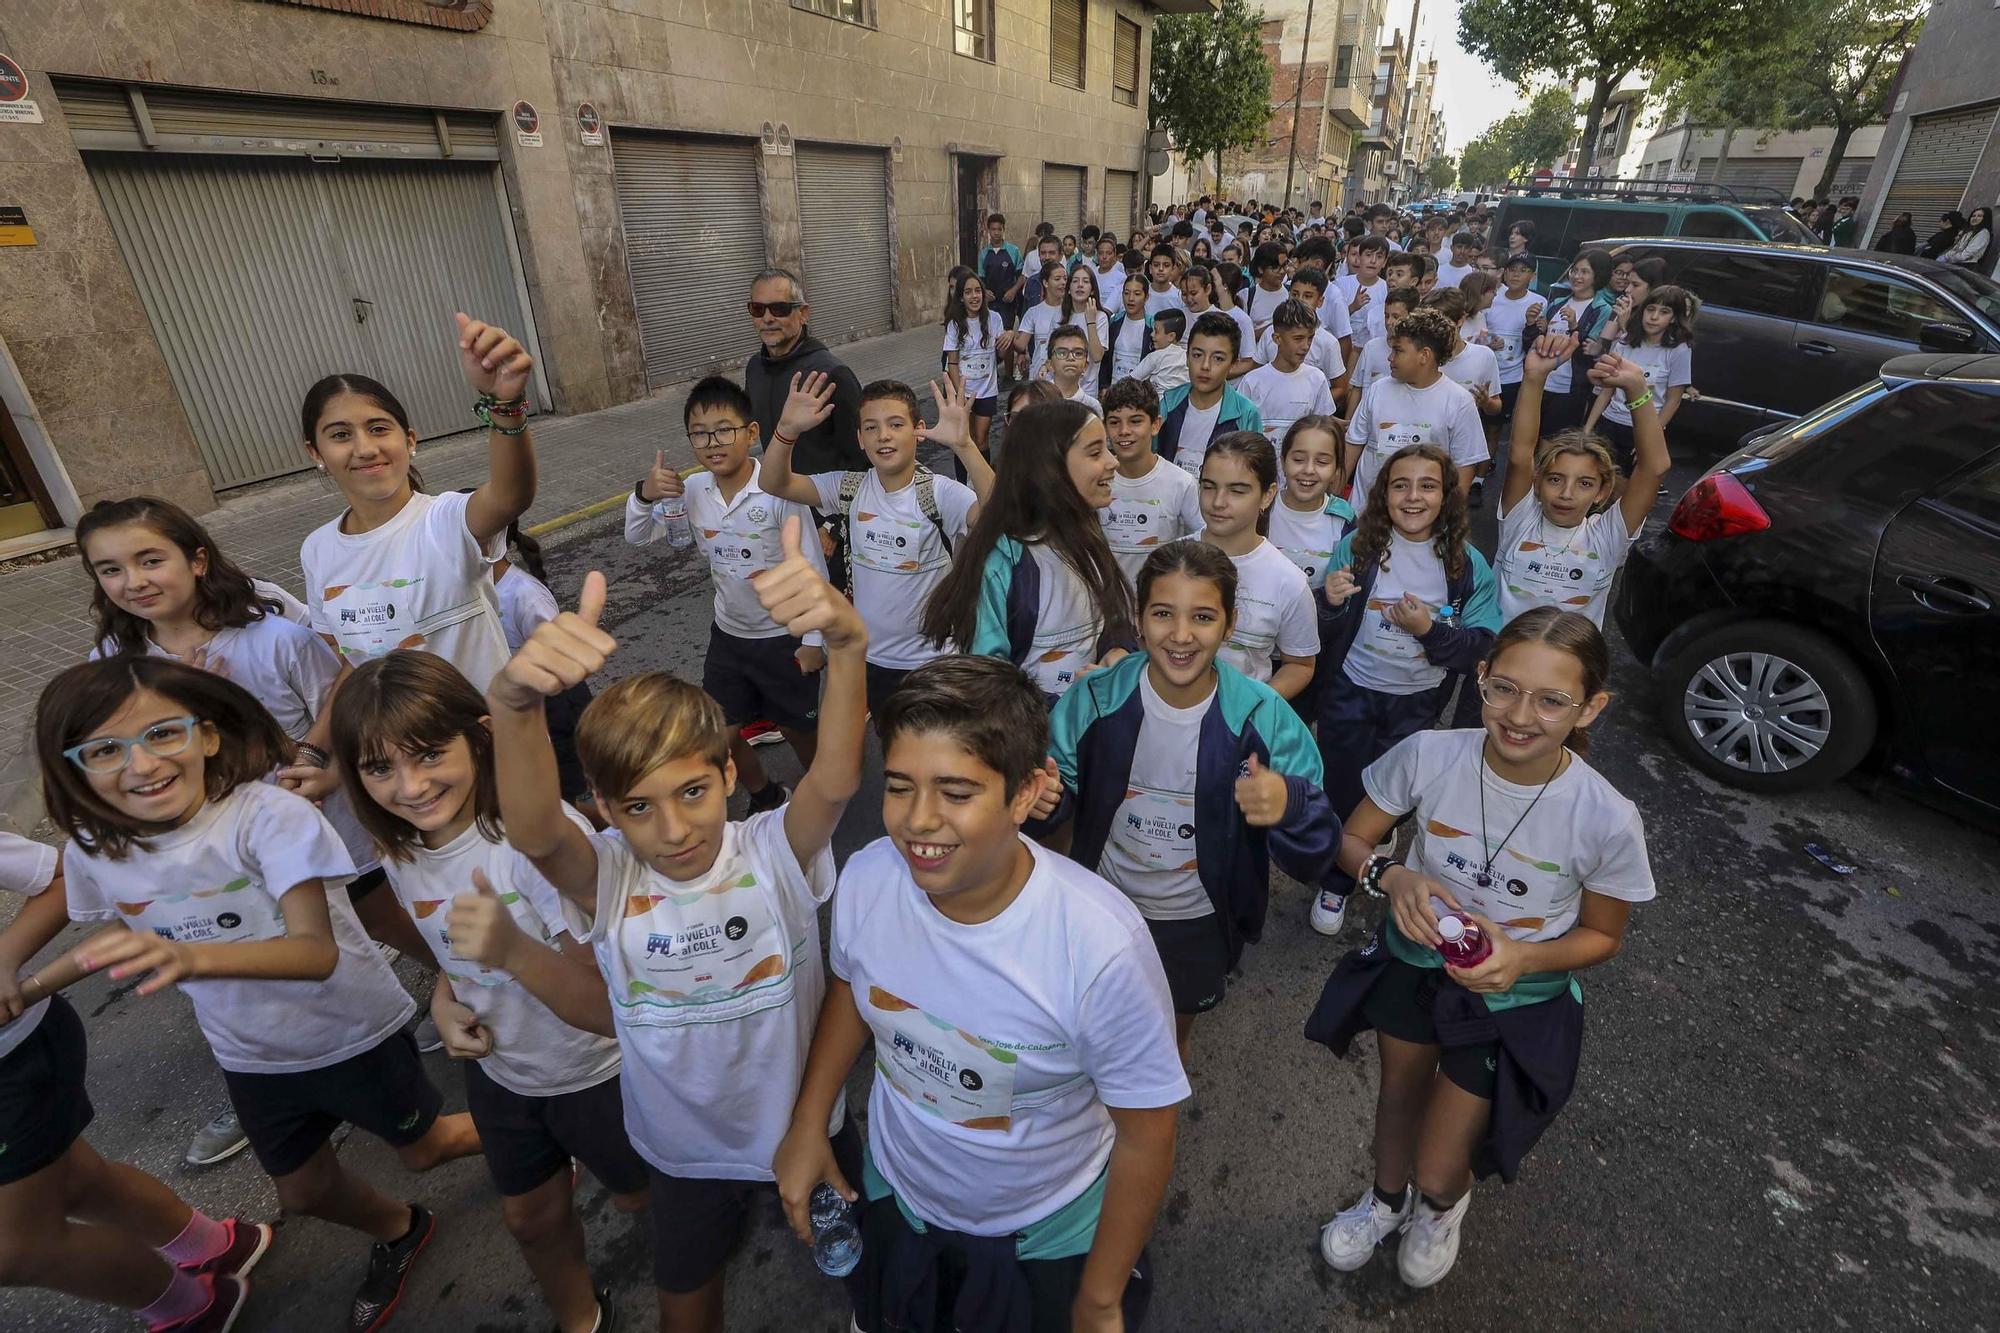 La carrera solidaria contra la leucemia infantil en el colegio San Jose de Calasanz Elche